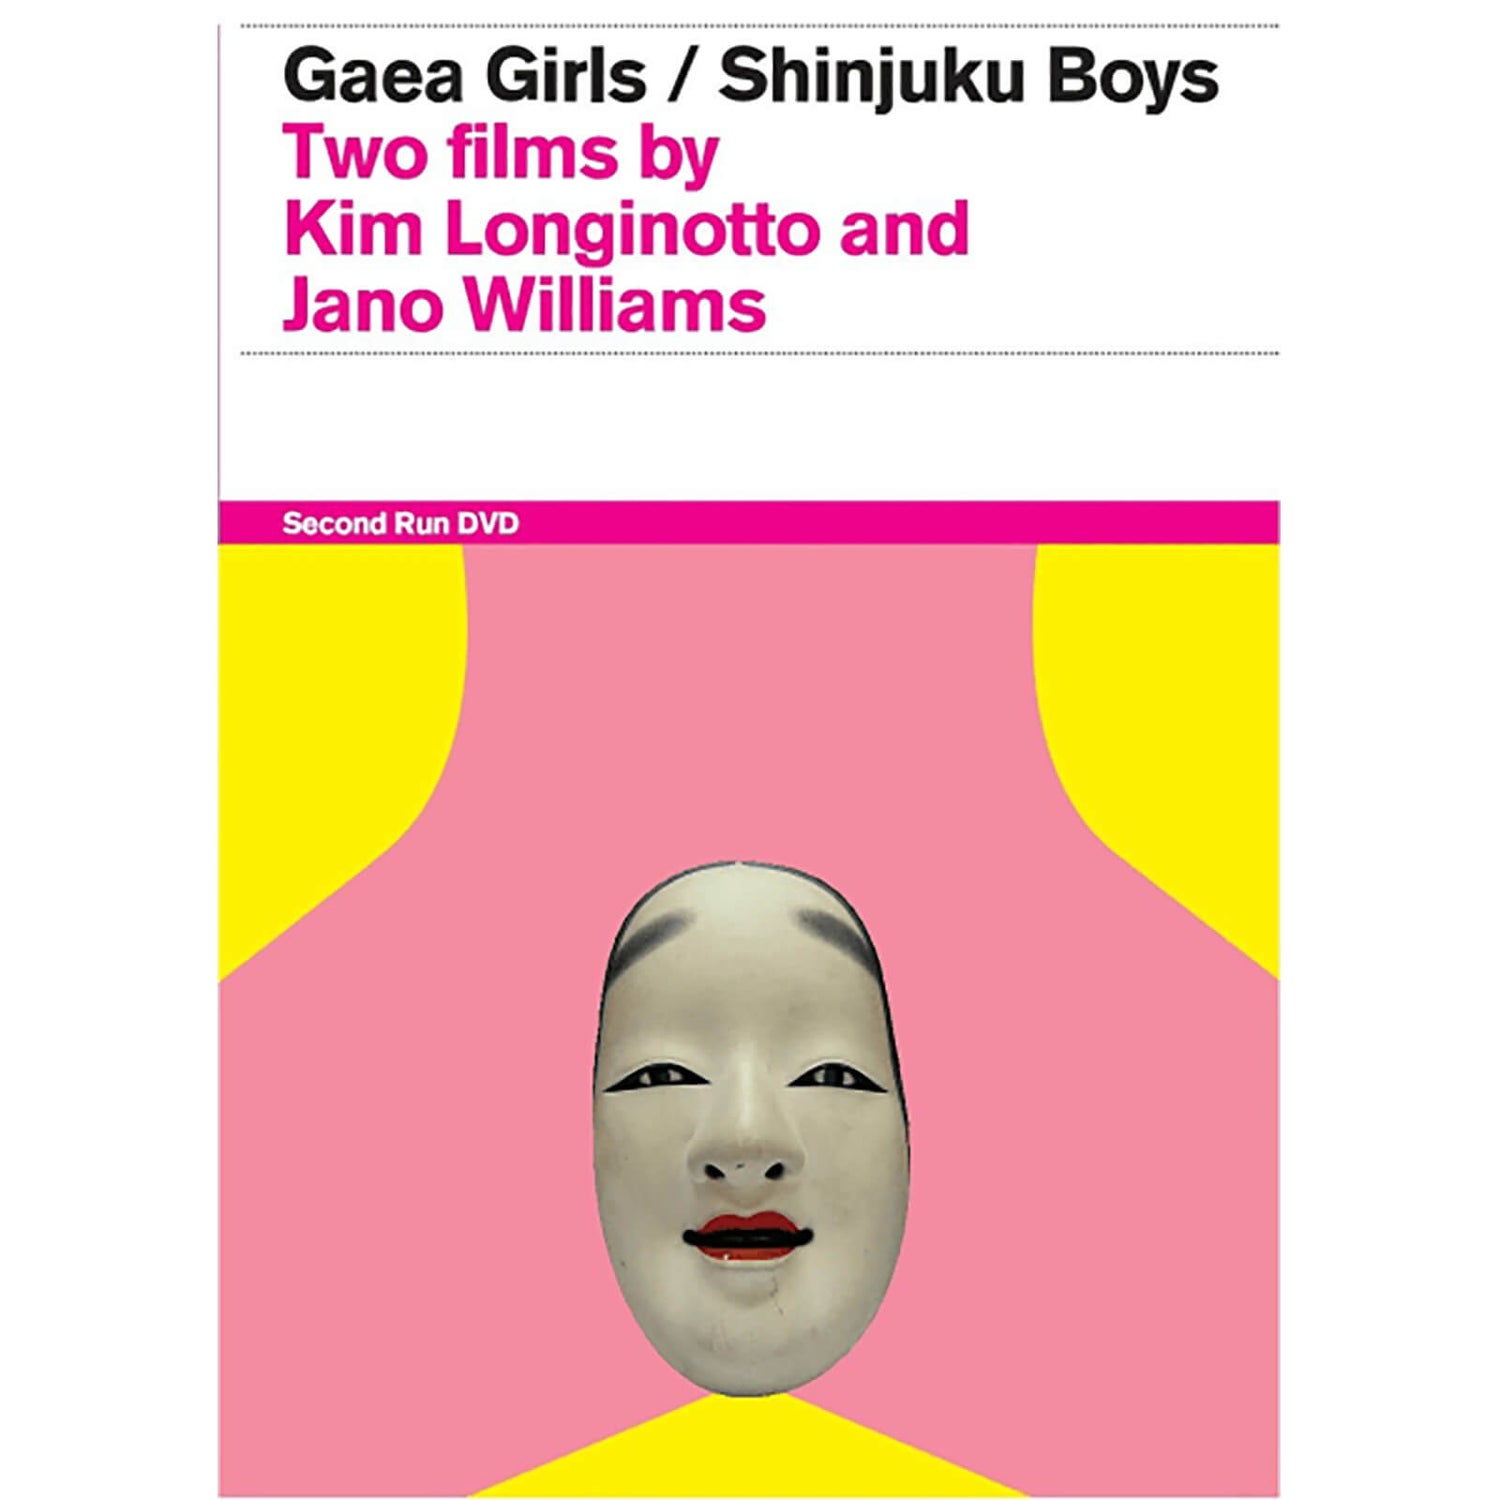 Gaea Girls / Shinjuku